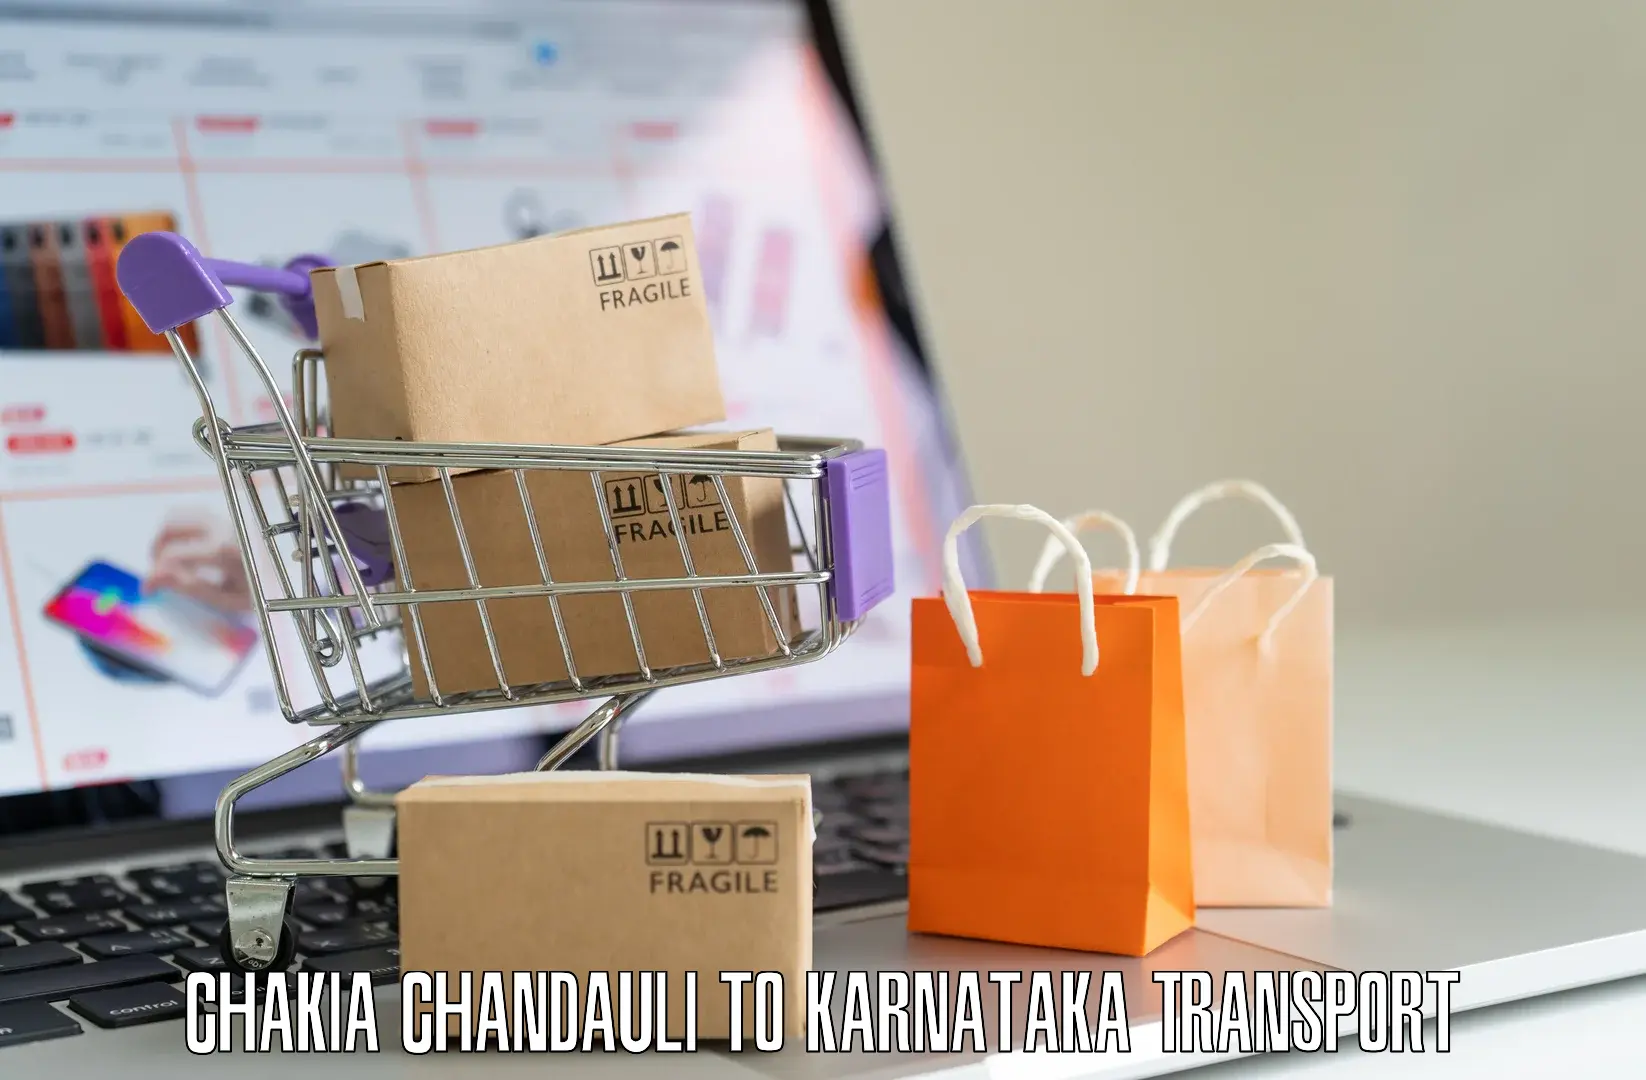 Pick up transport service Chakia Chandauli to Dakshina Kannada